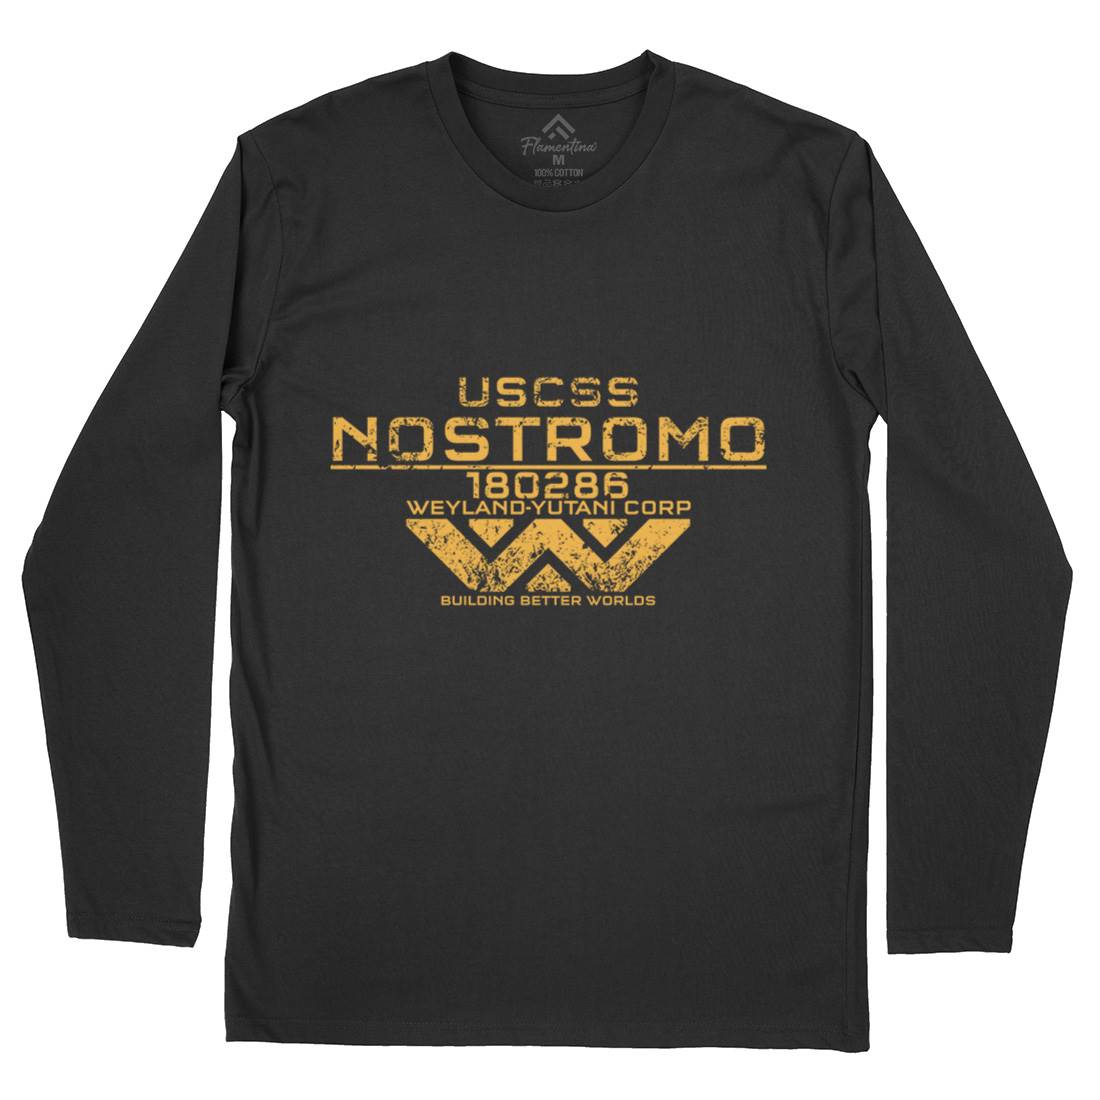 Uscss Nostromo Mens Long Sleeve T-Shirt Space D140